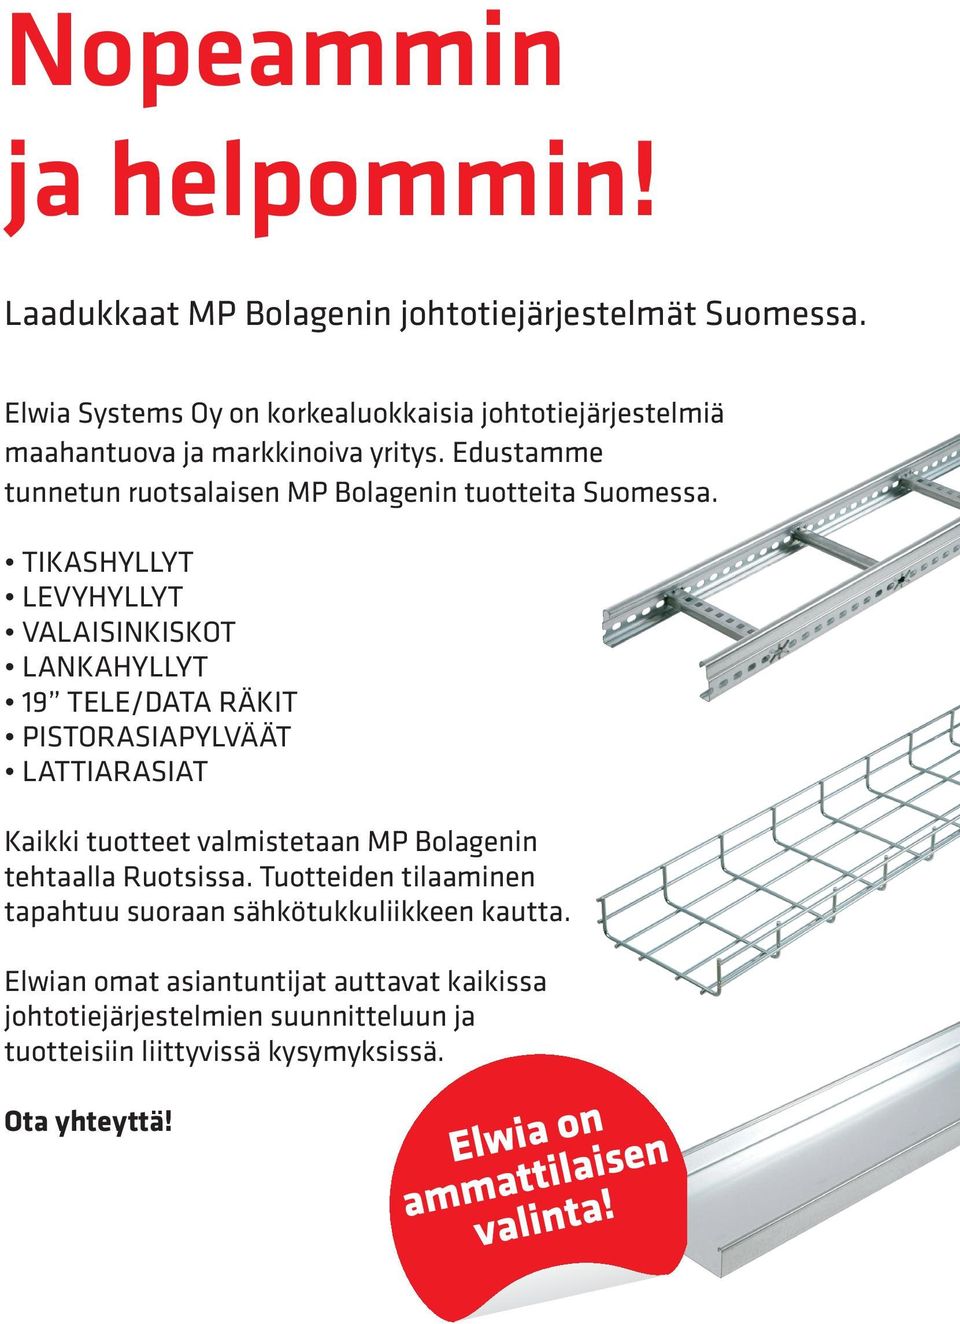 Edustamme tunnetun ruotsalaisen MP Bolagenin tuotteita Suomessa.